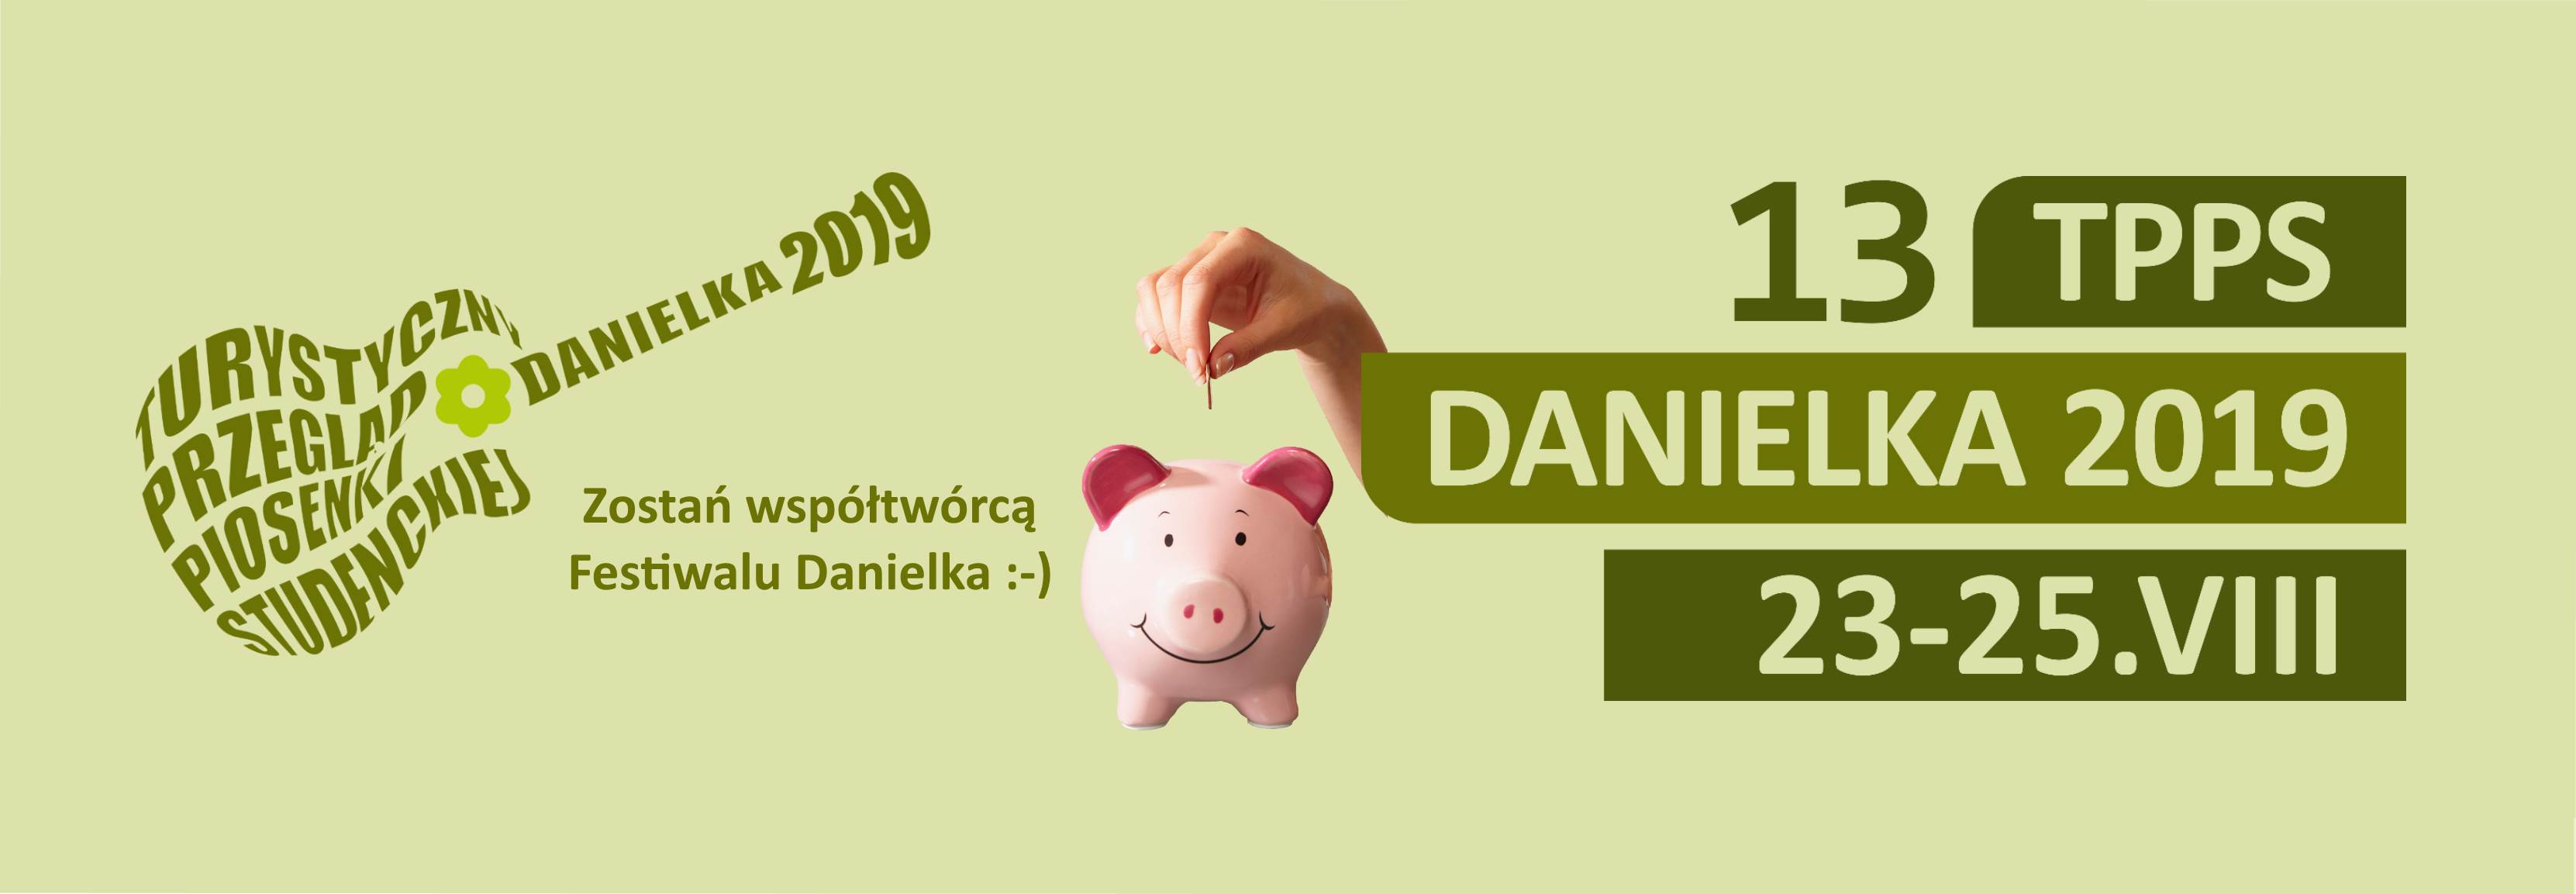 Zrzutka na Danielkę 2019 uruchomiona!